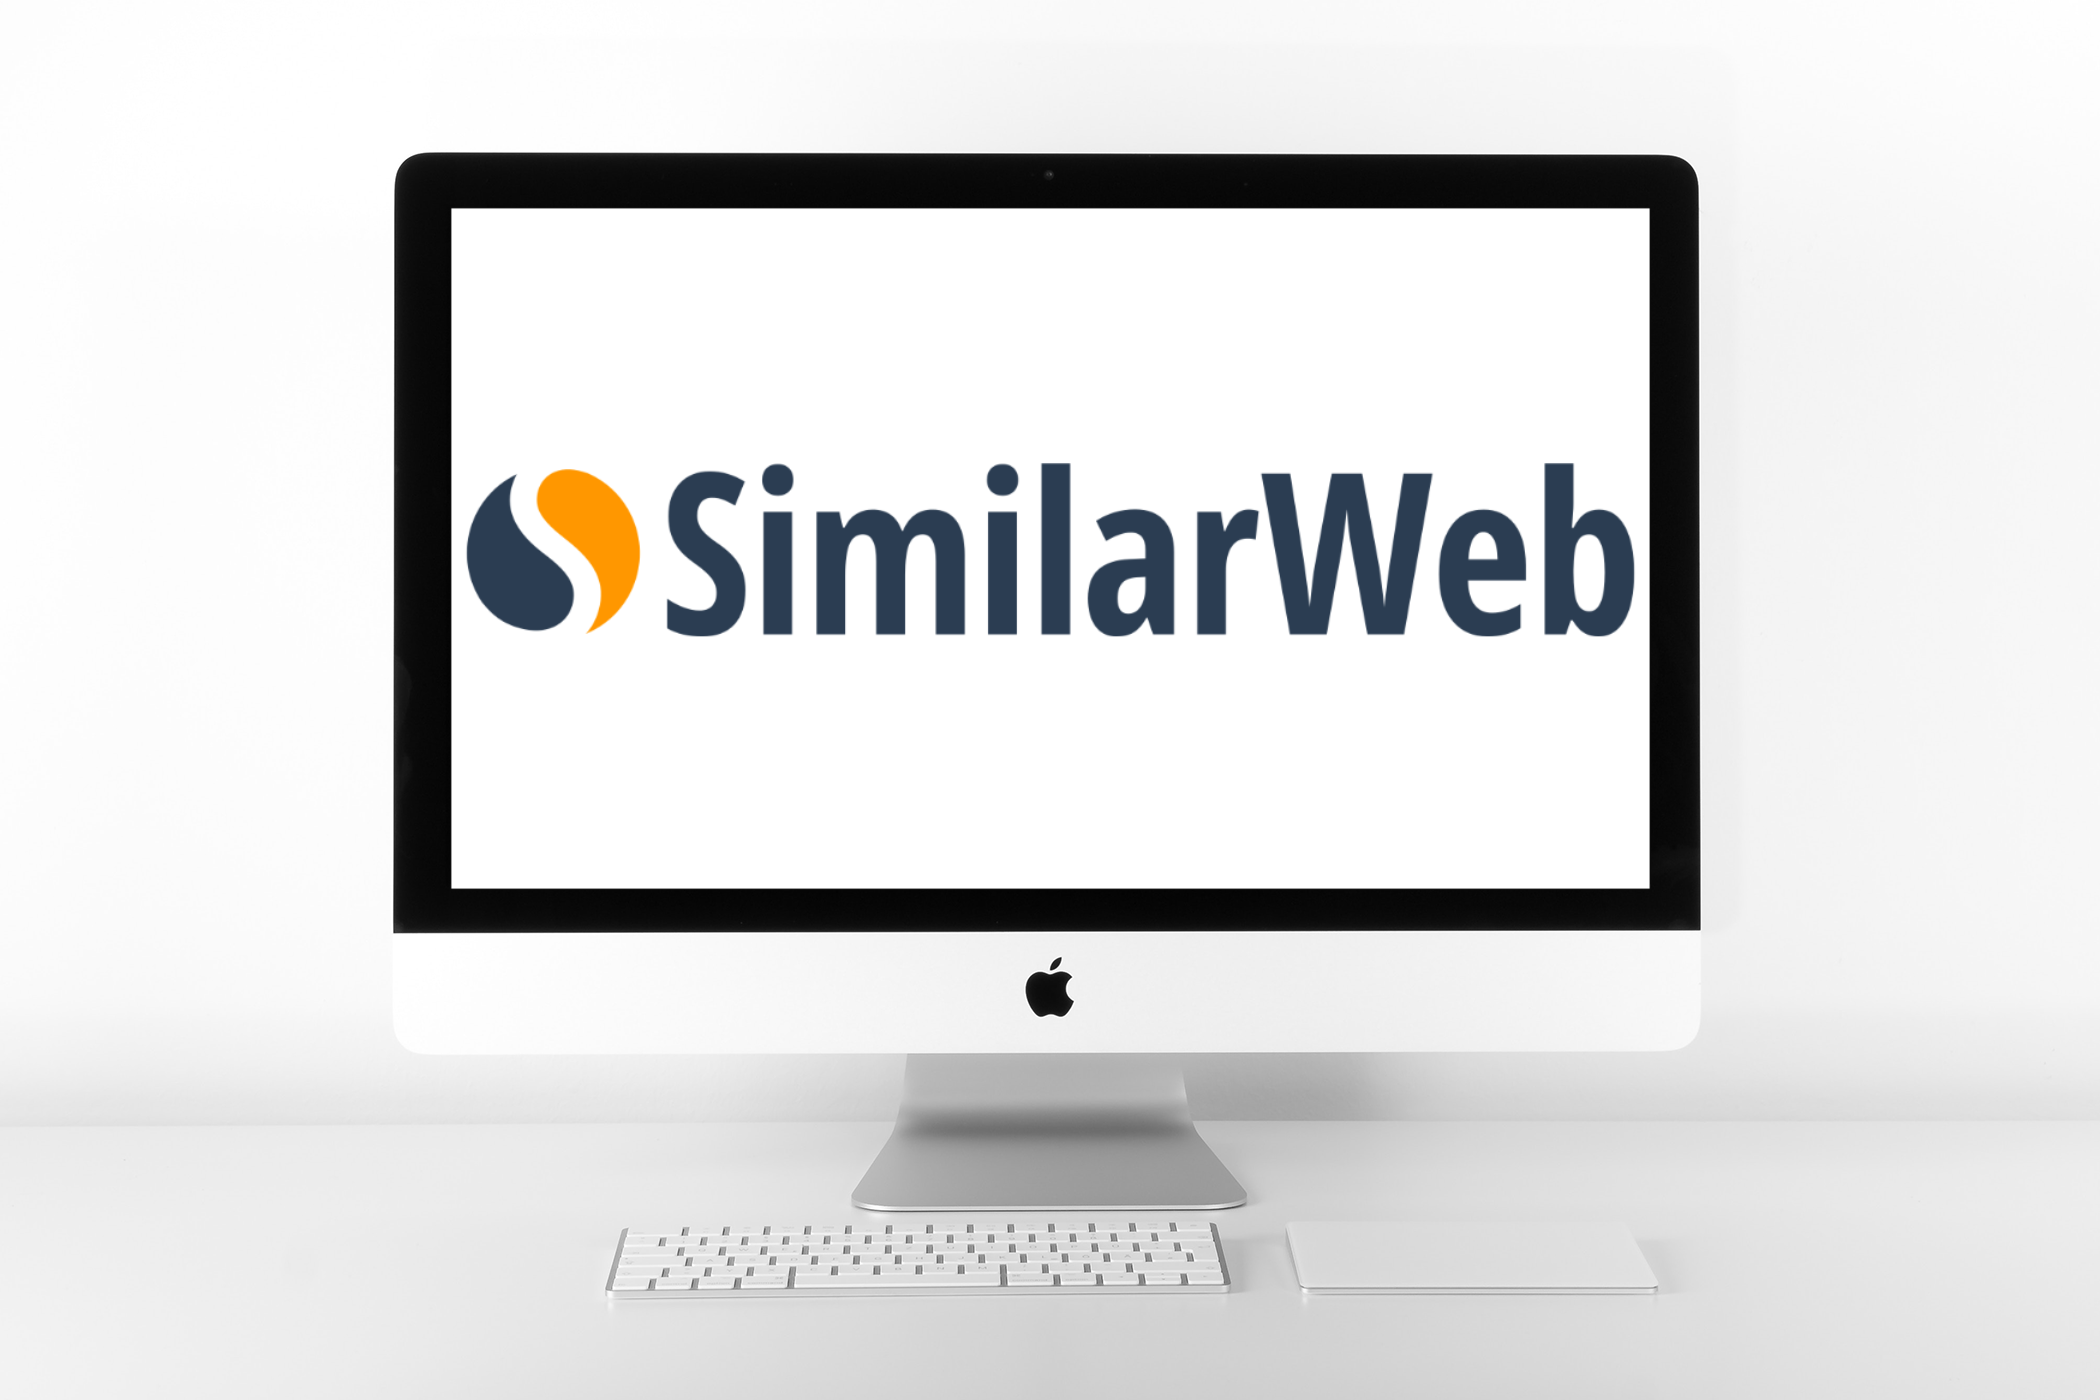 Similarweb Initial Public Offering